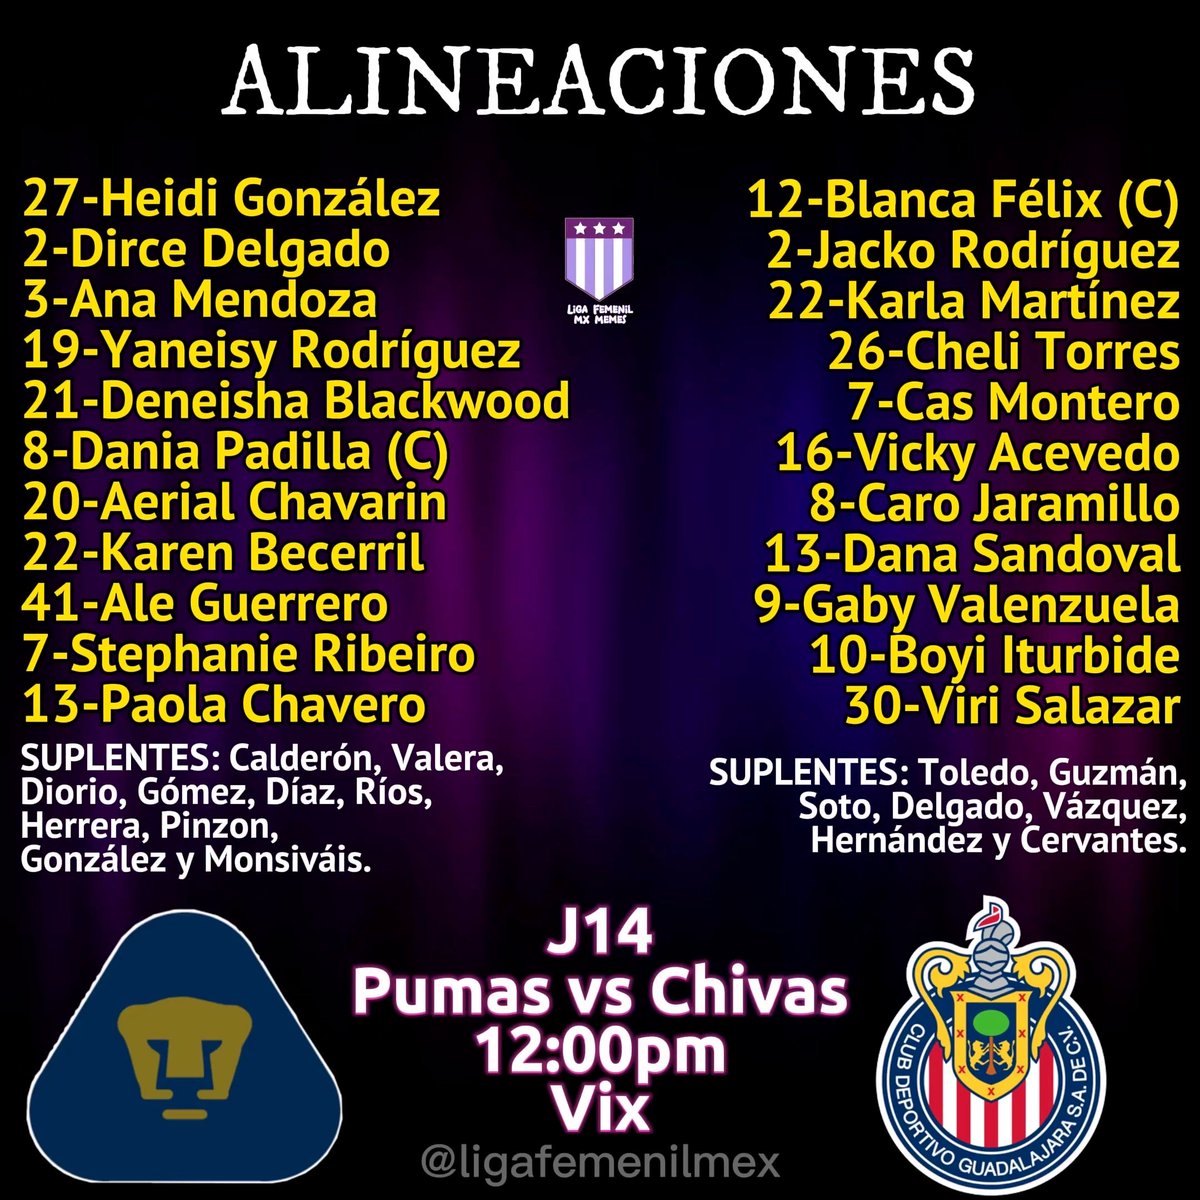 EN CU
Pumas enfrenta a Chivas 🔥
El encuentro comienza a las 12:00hrs. a través de Vix 👊🏻
#LigaBBVAMXFemenil #VamosPorEllas #FútbolFemenino #DePumasSoy #DaleRebaño